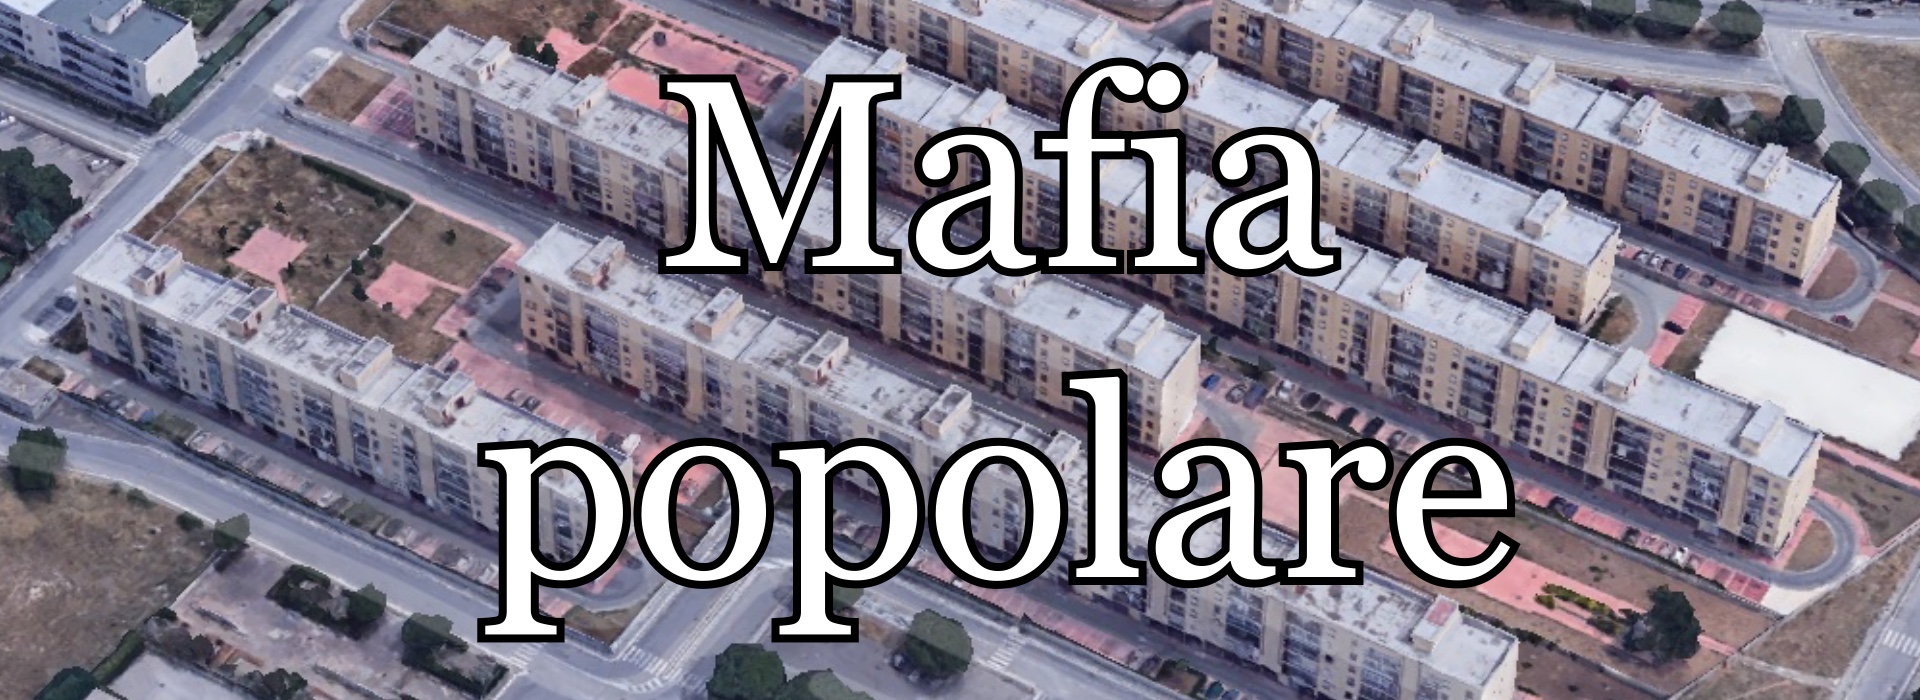 Bari, la triste realtà degli alloggi popolari: il caso di Filippo Cucumazzo e l'Invasione della Mafia